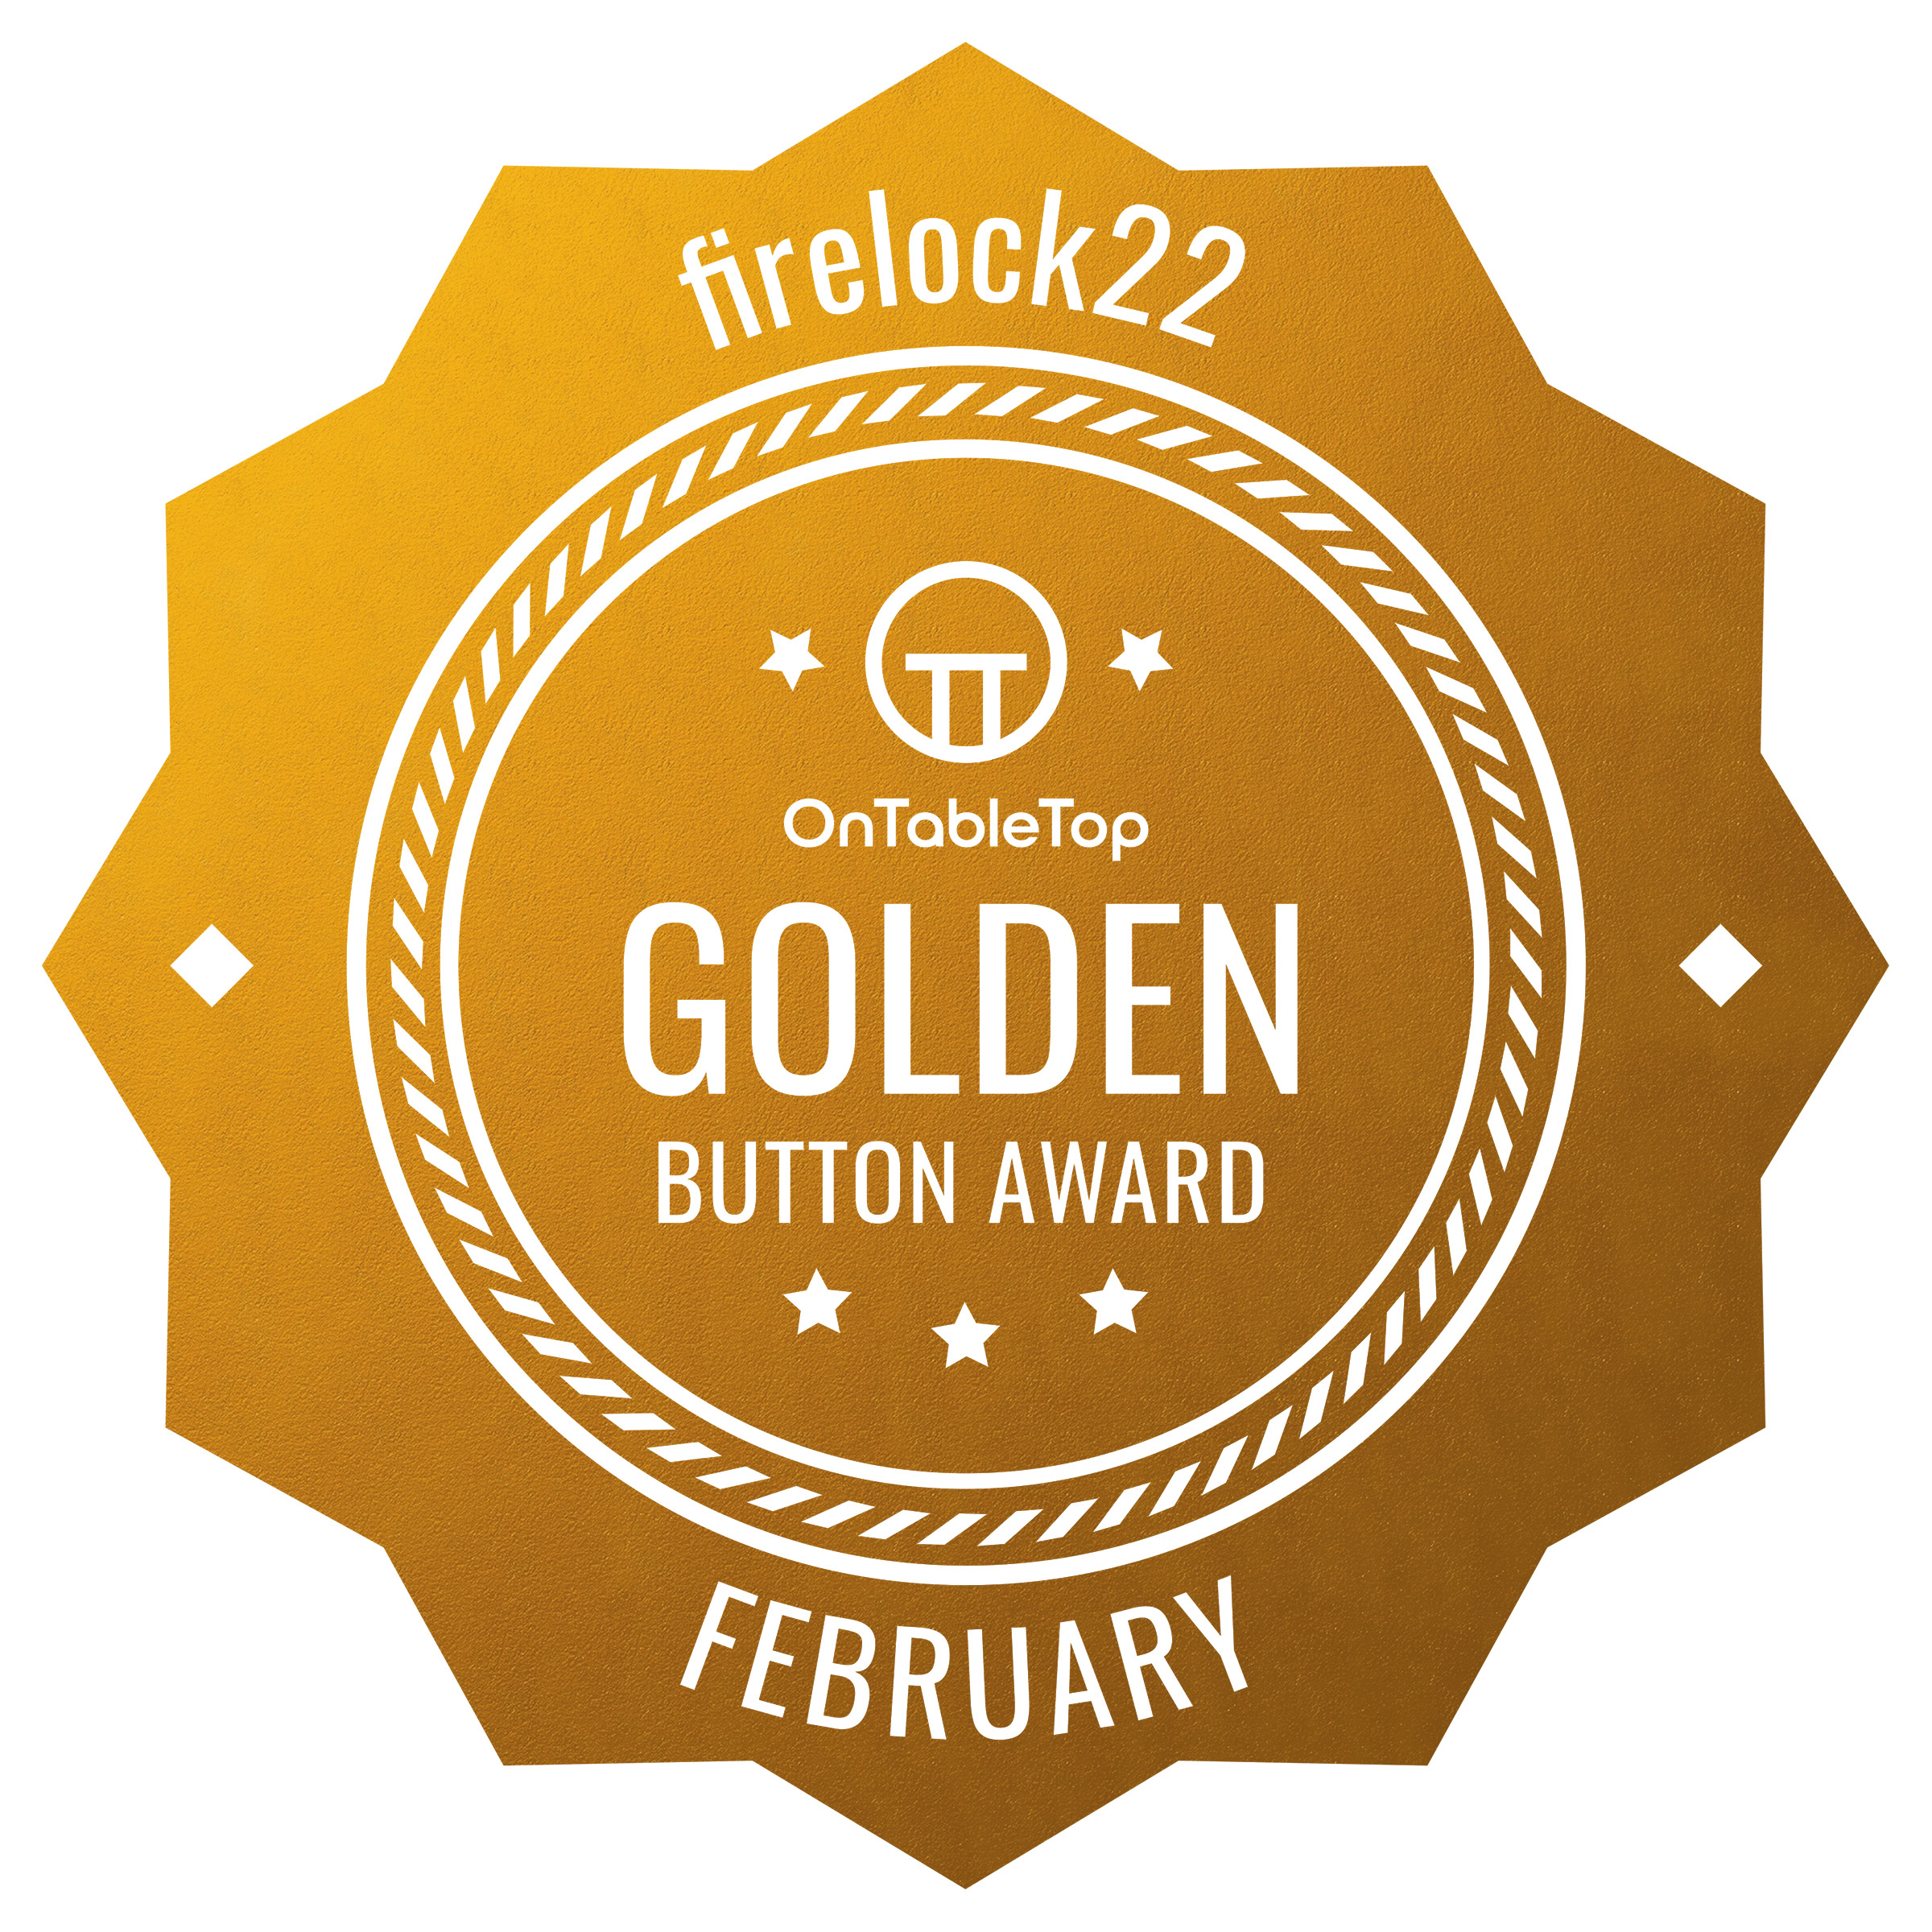 firelock22 - Gold Button